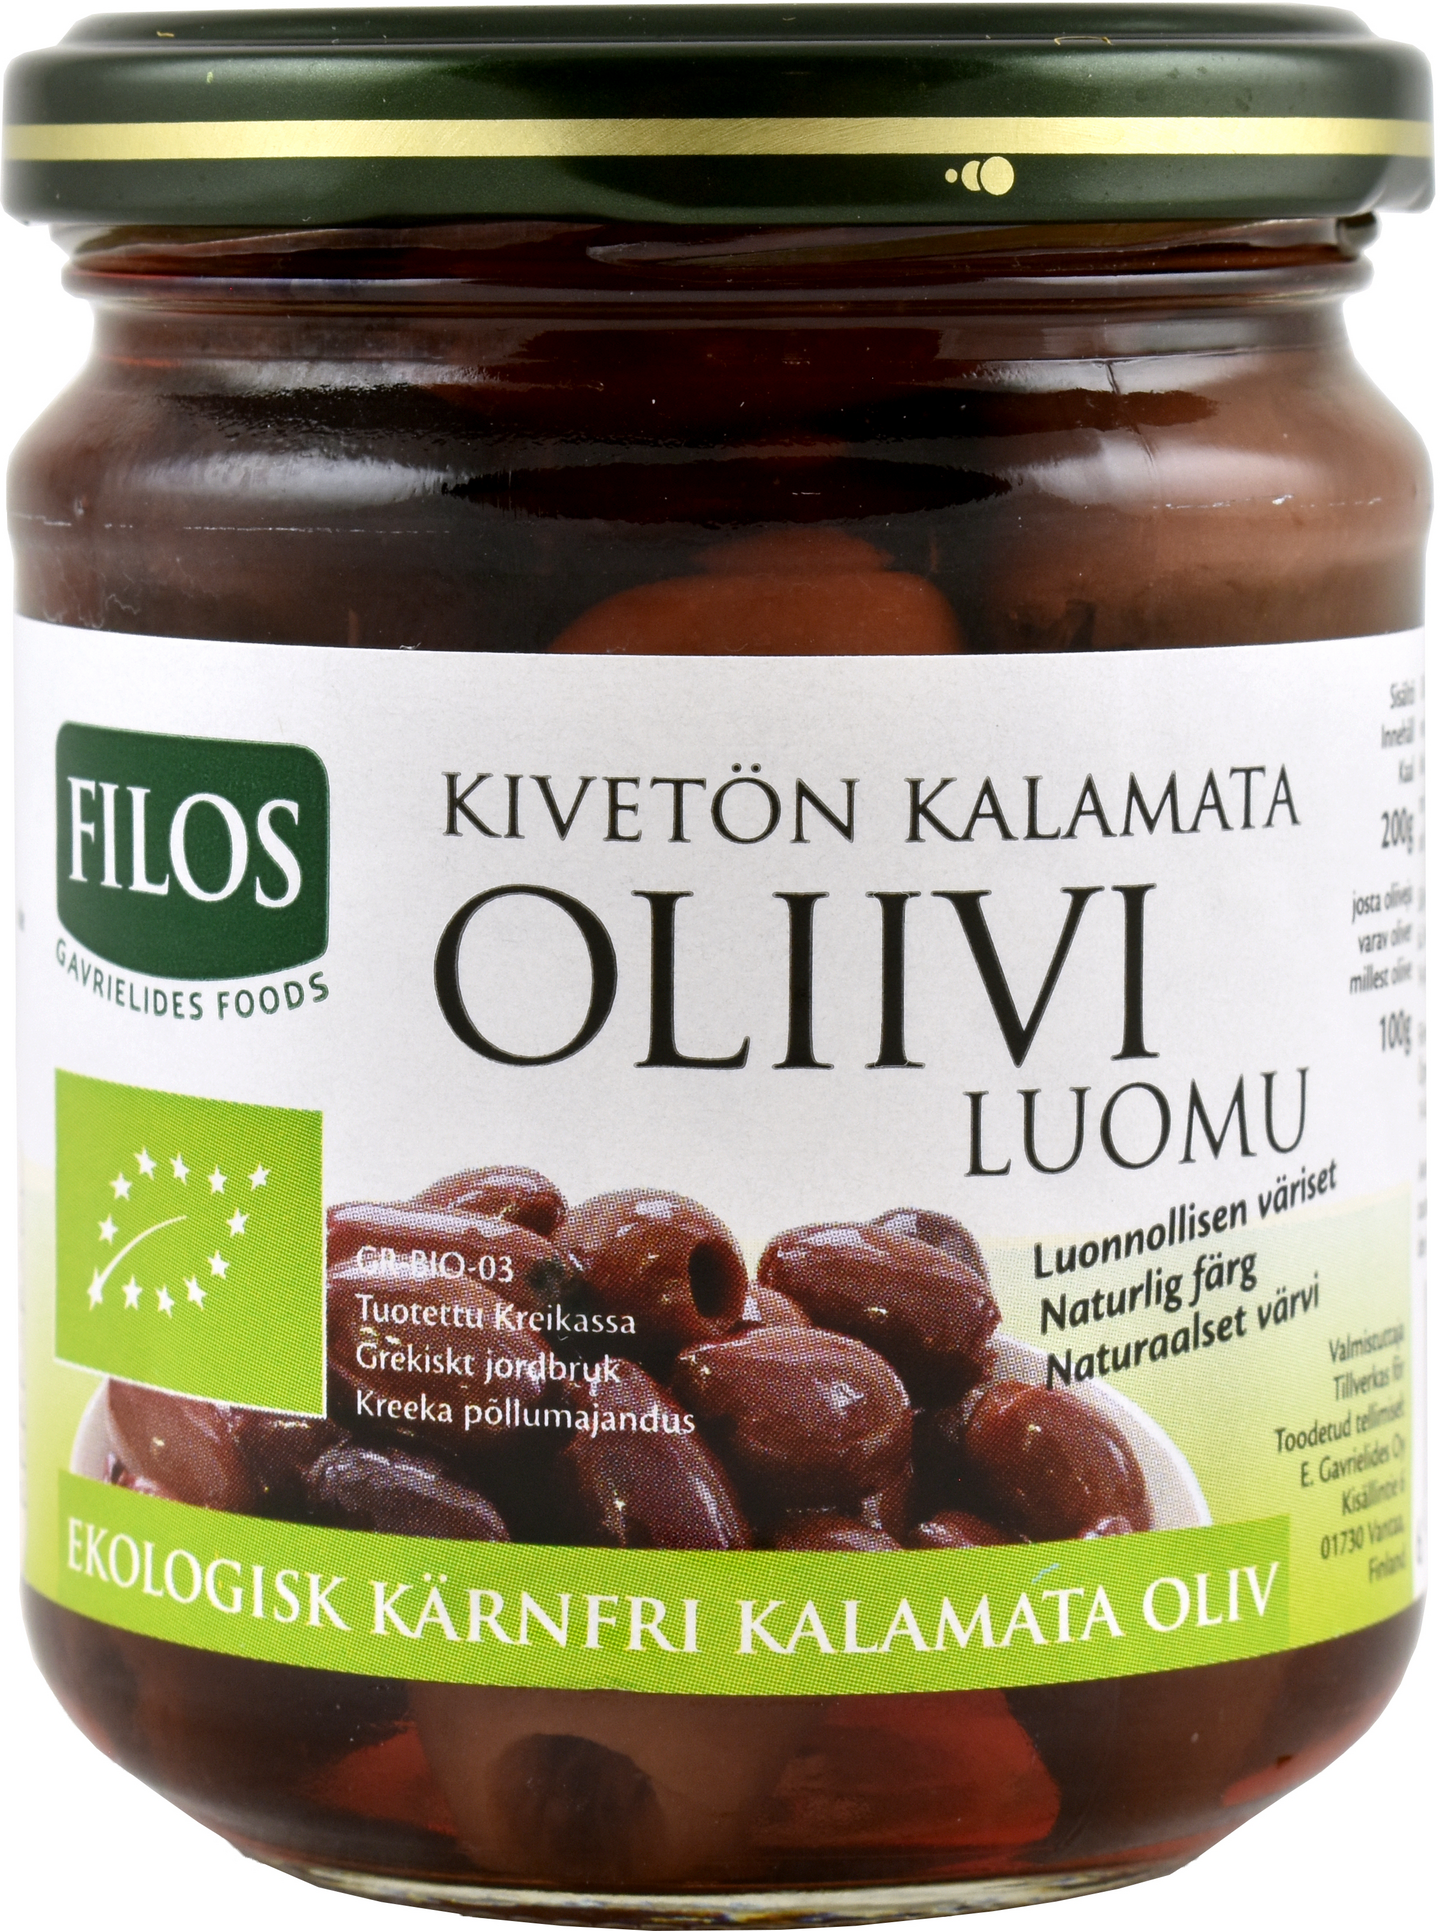 Filos Luomu kivetön Kalamata-oliivi 200g/100g